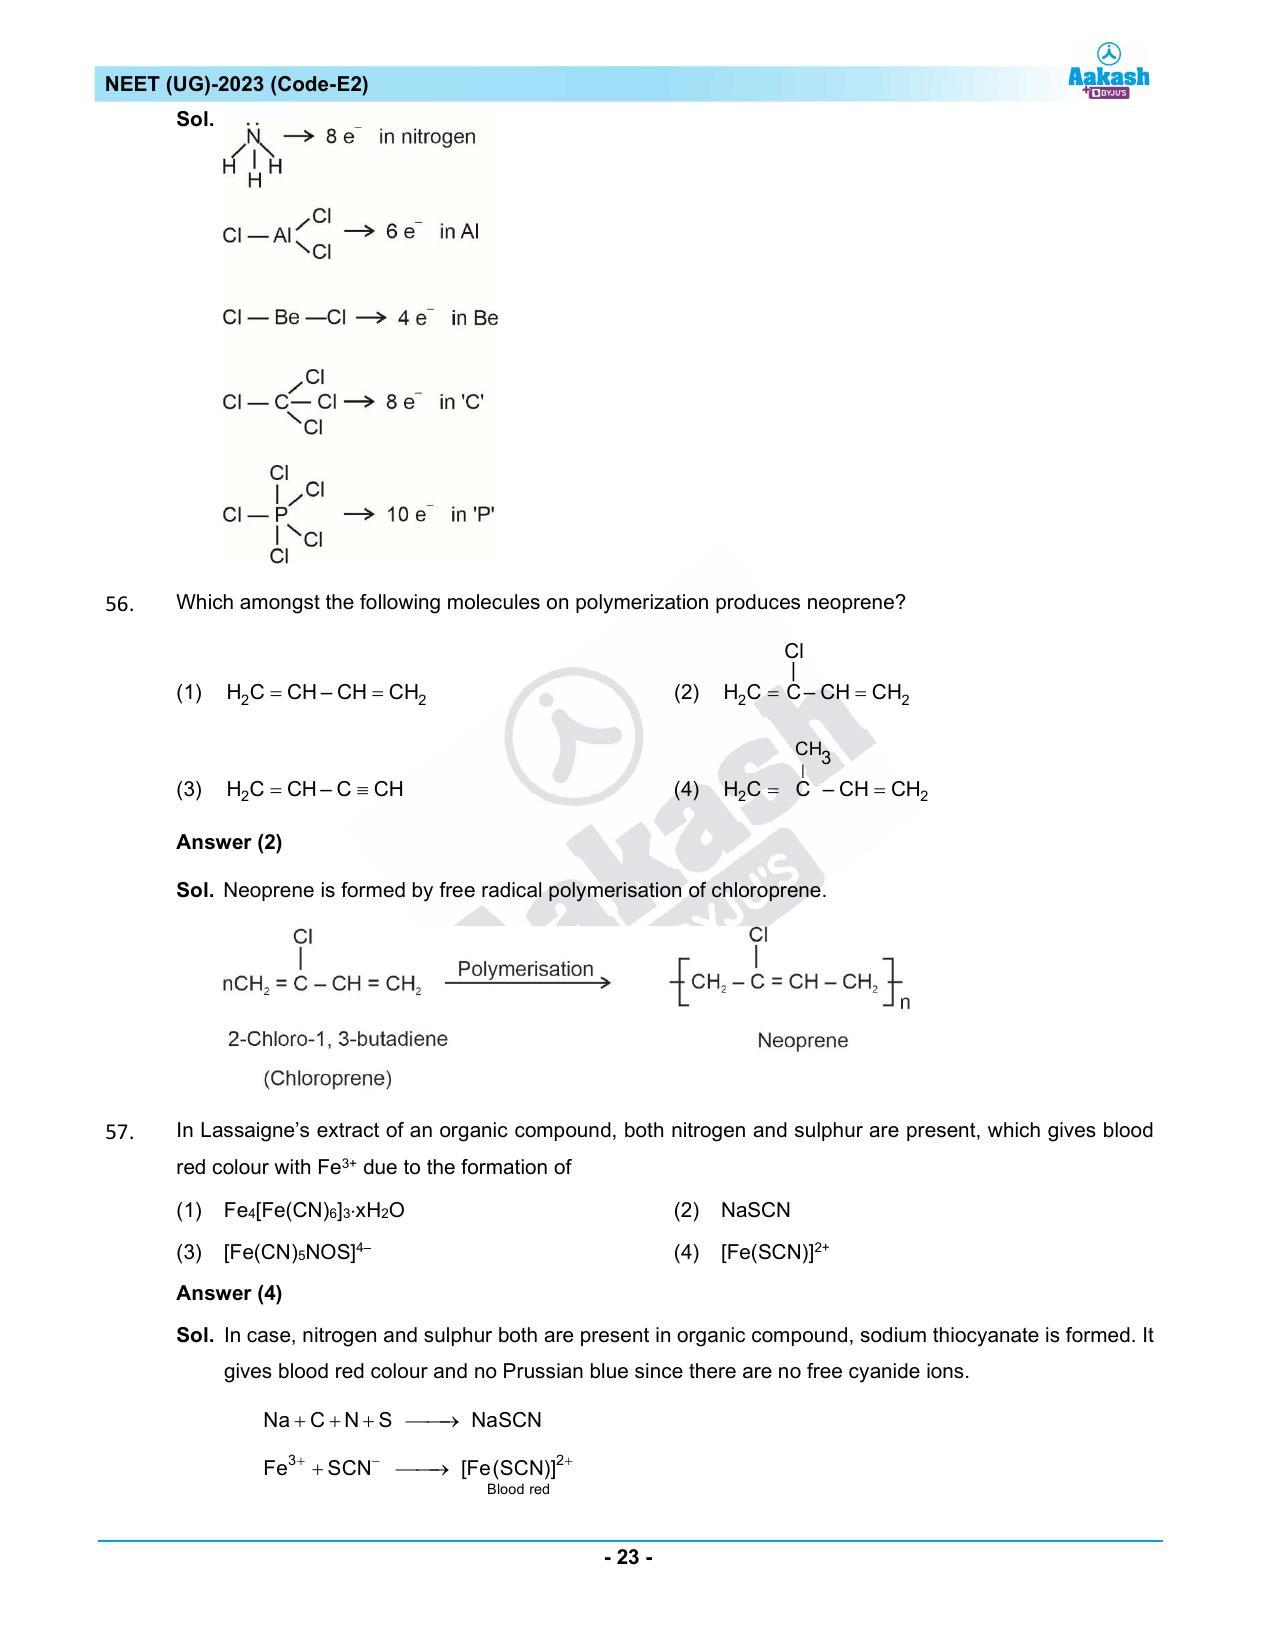 NEET 2023 Question Paper E2 - Page 23